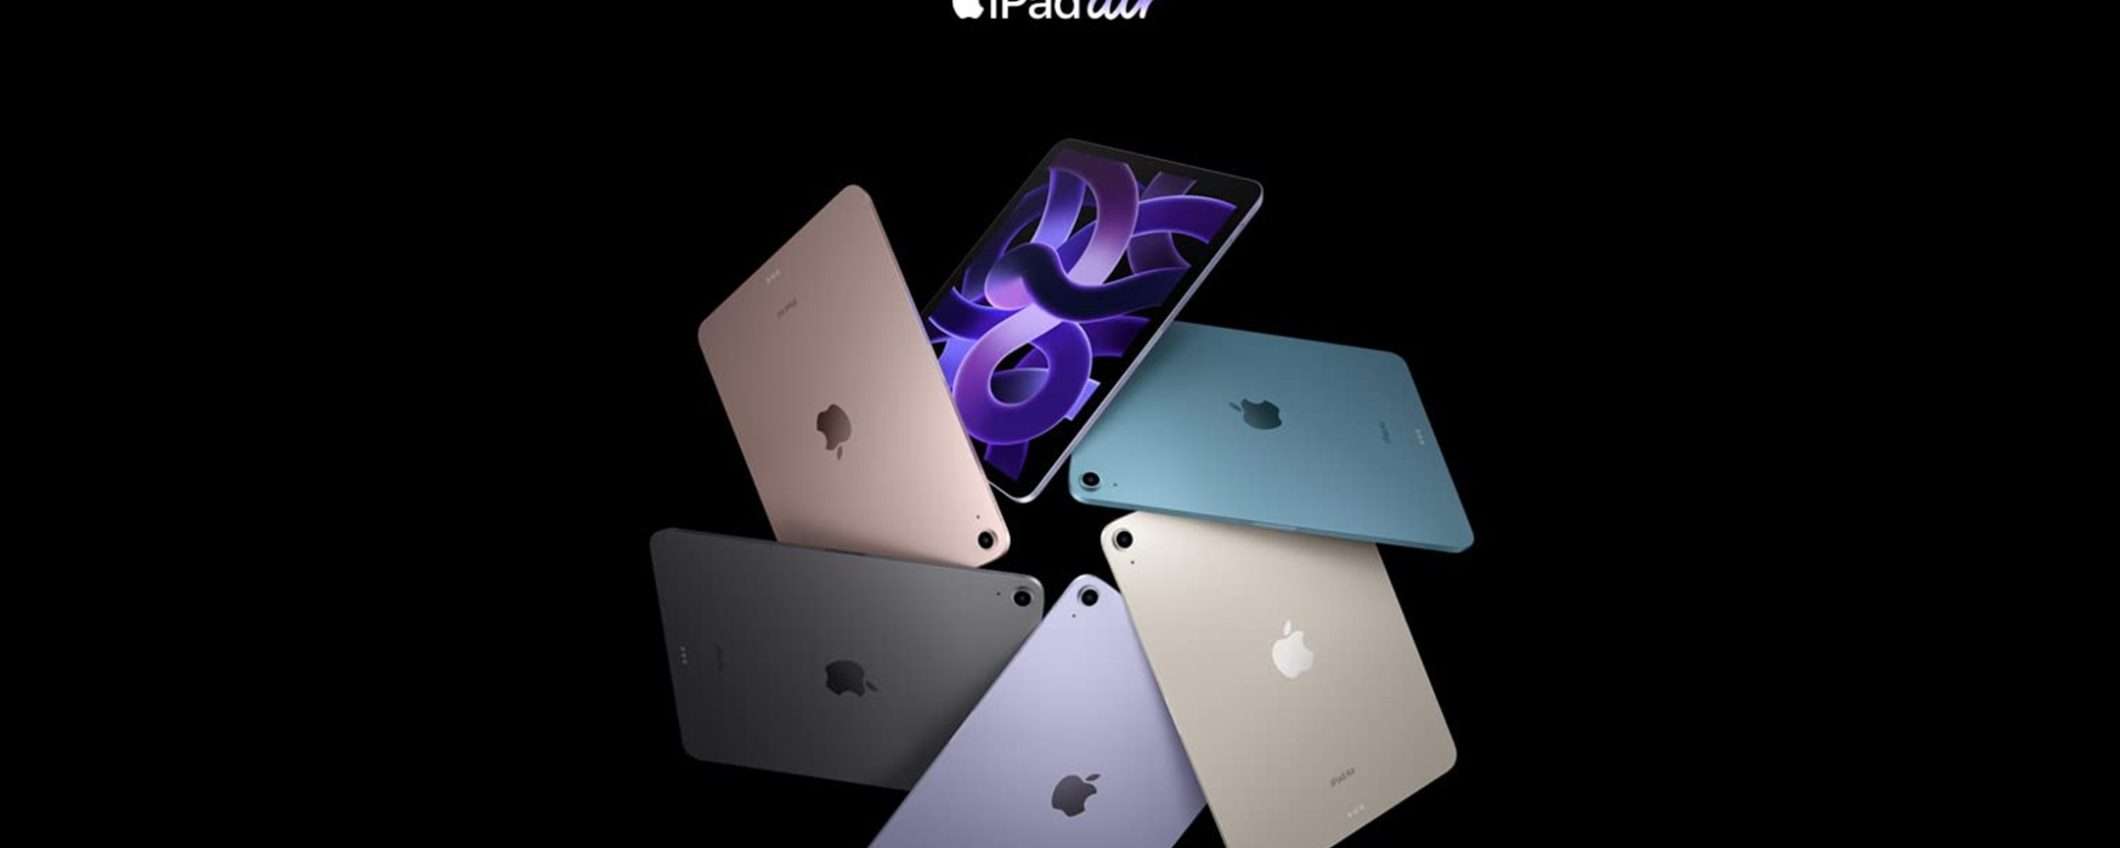 Apple iPad Air di 5a generazione al MINIMO STORICO su Amazon